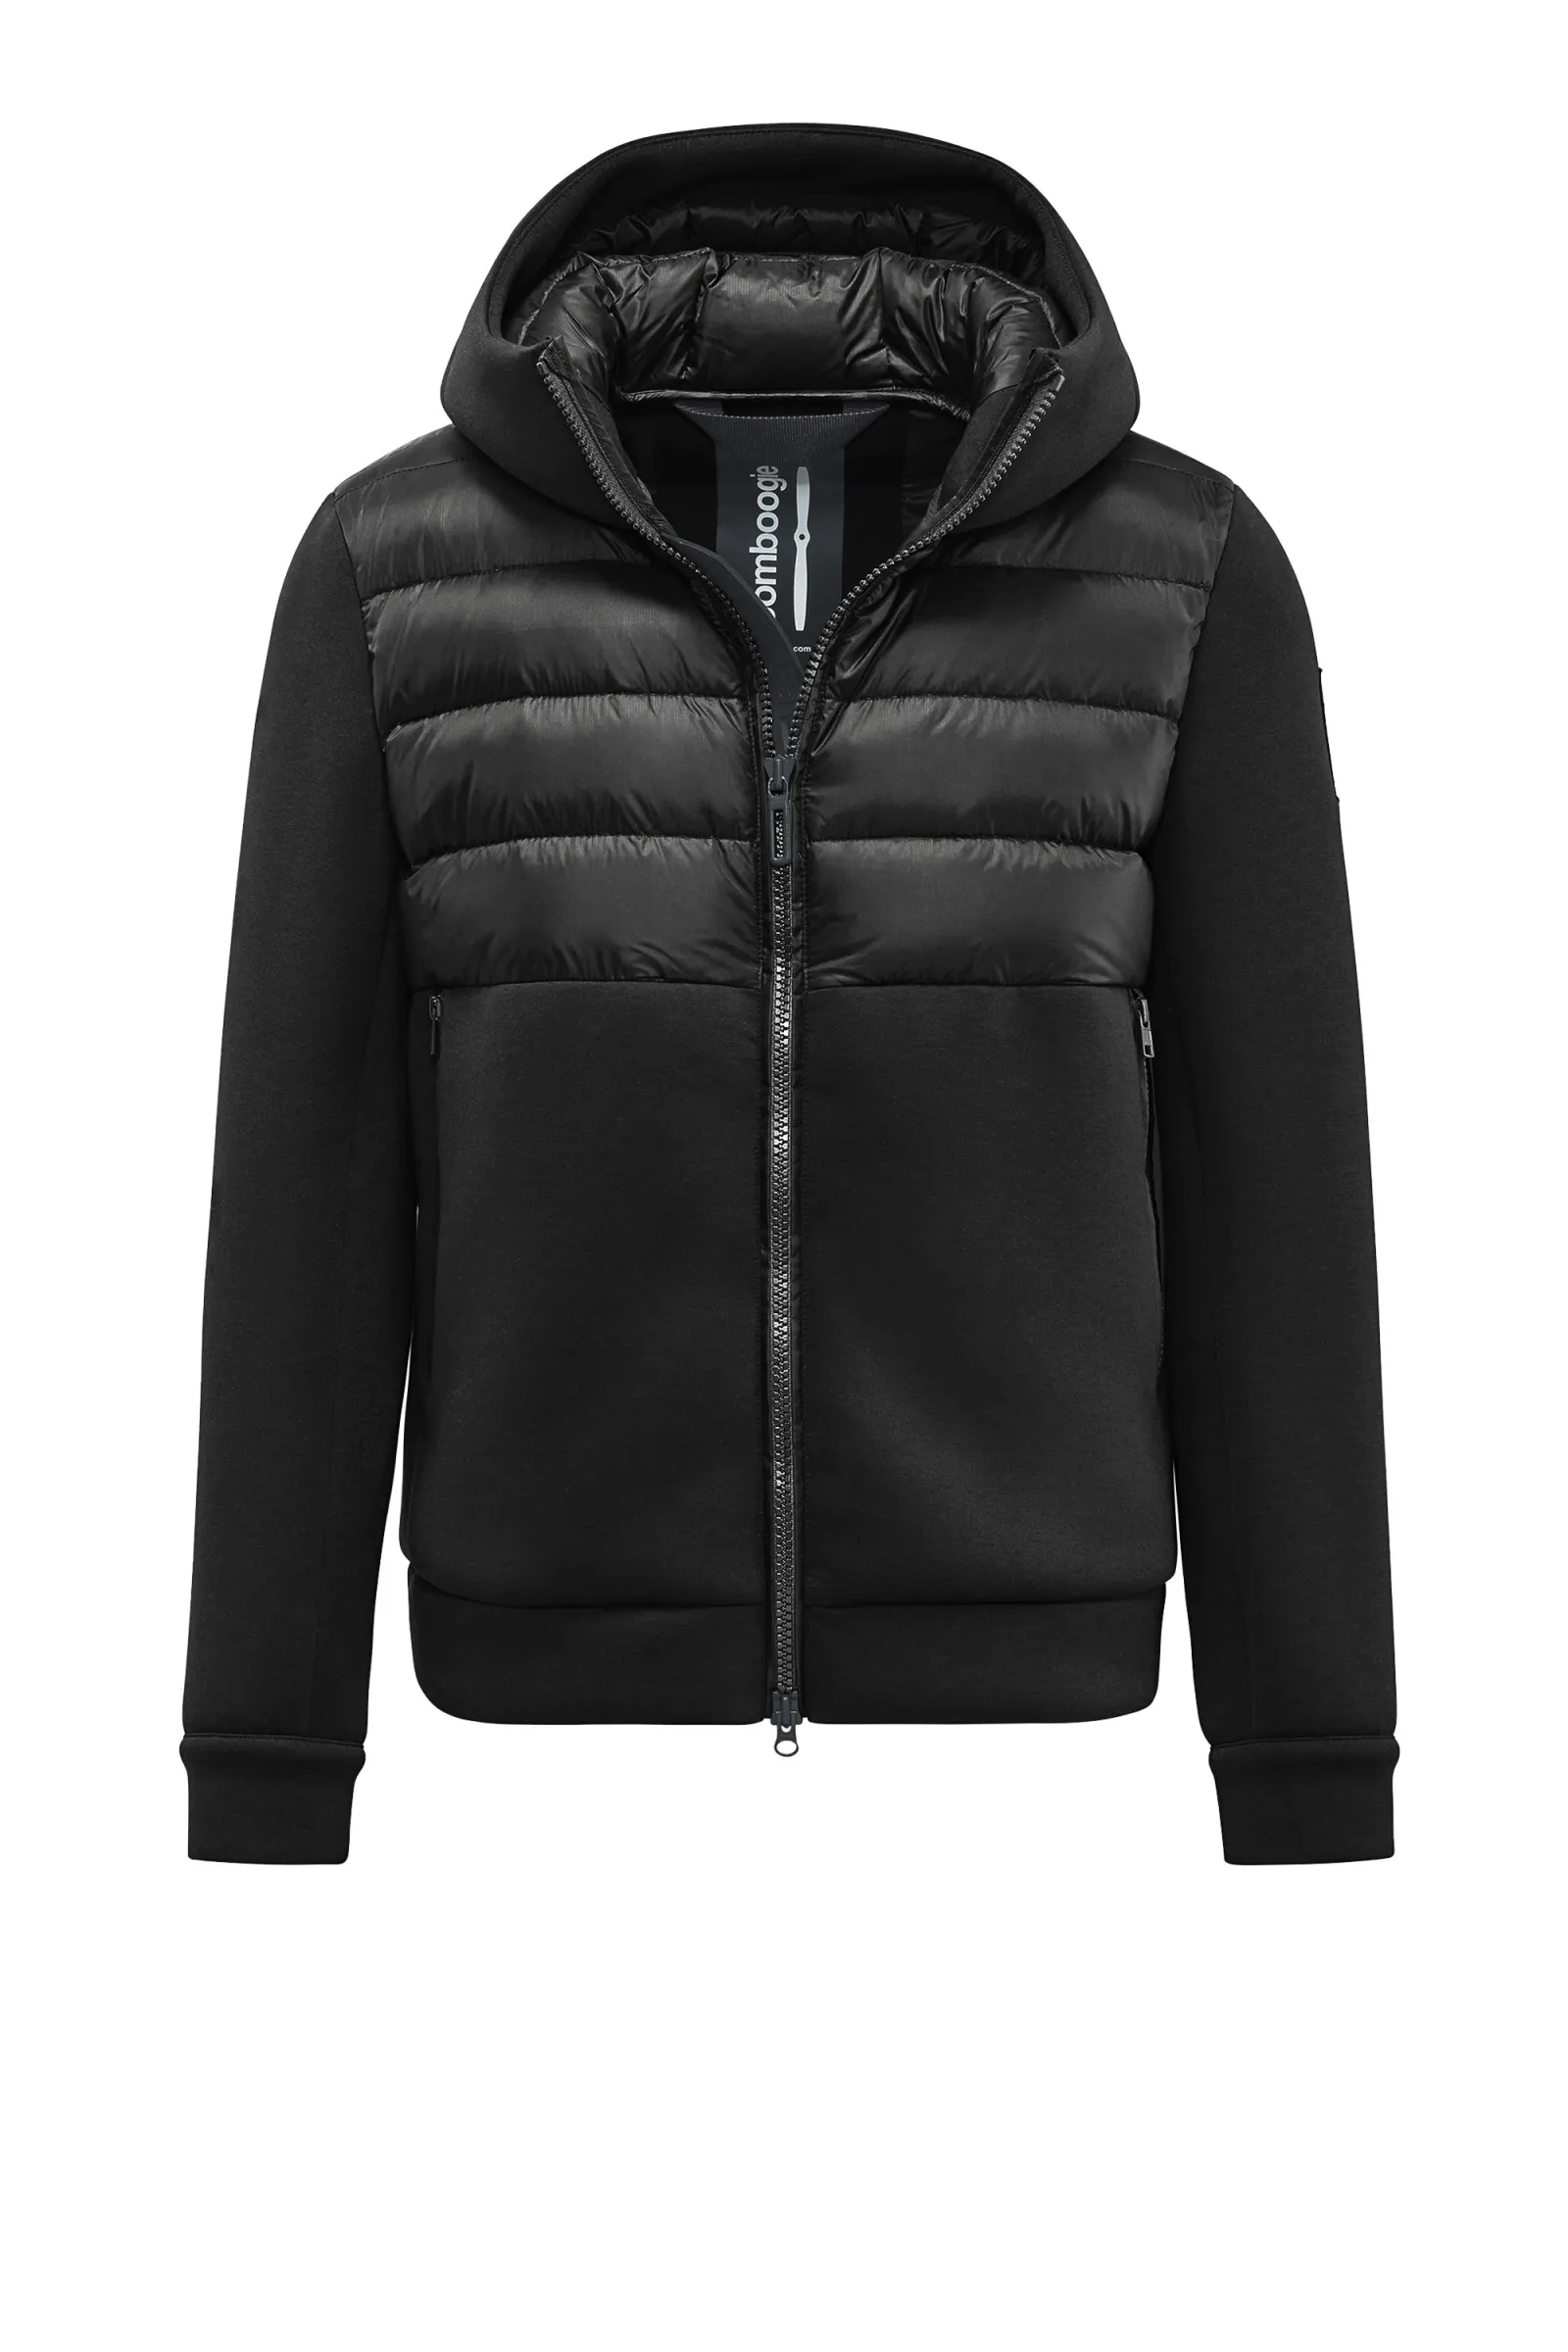 Bomboogie Turin Jacket - Jacke aus zwei Materialien, Neopren und Nylon Ripstop in schwarz 